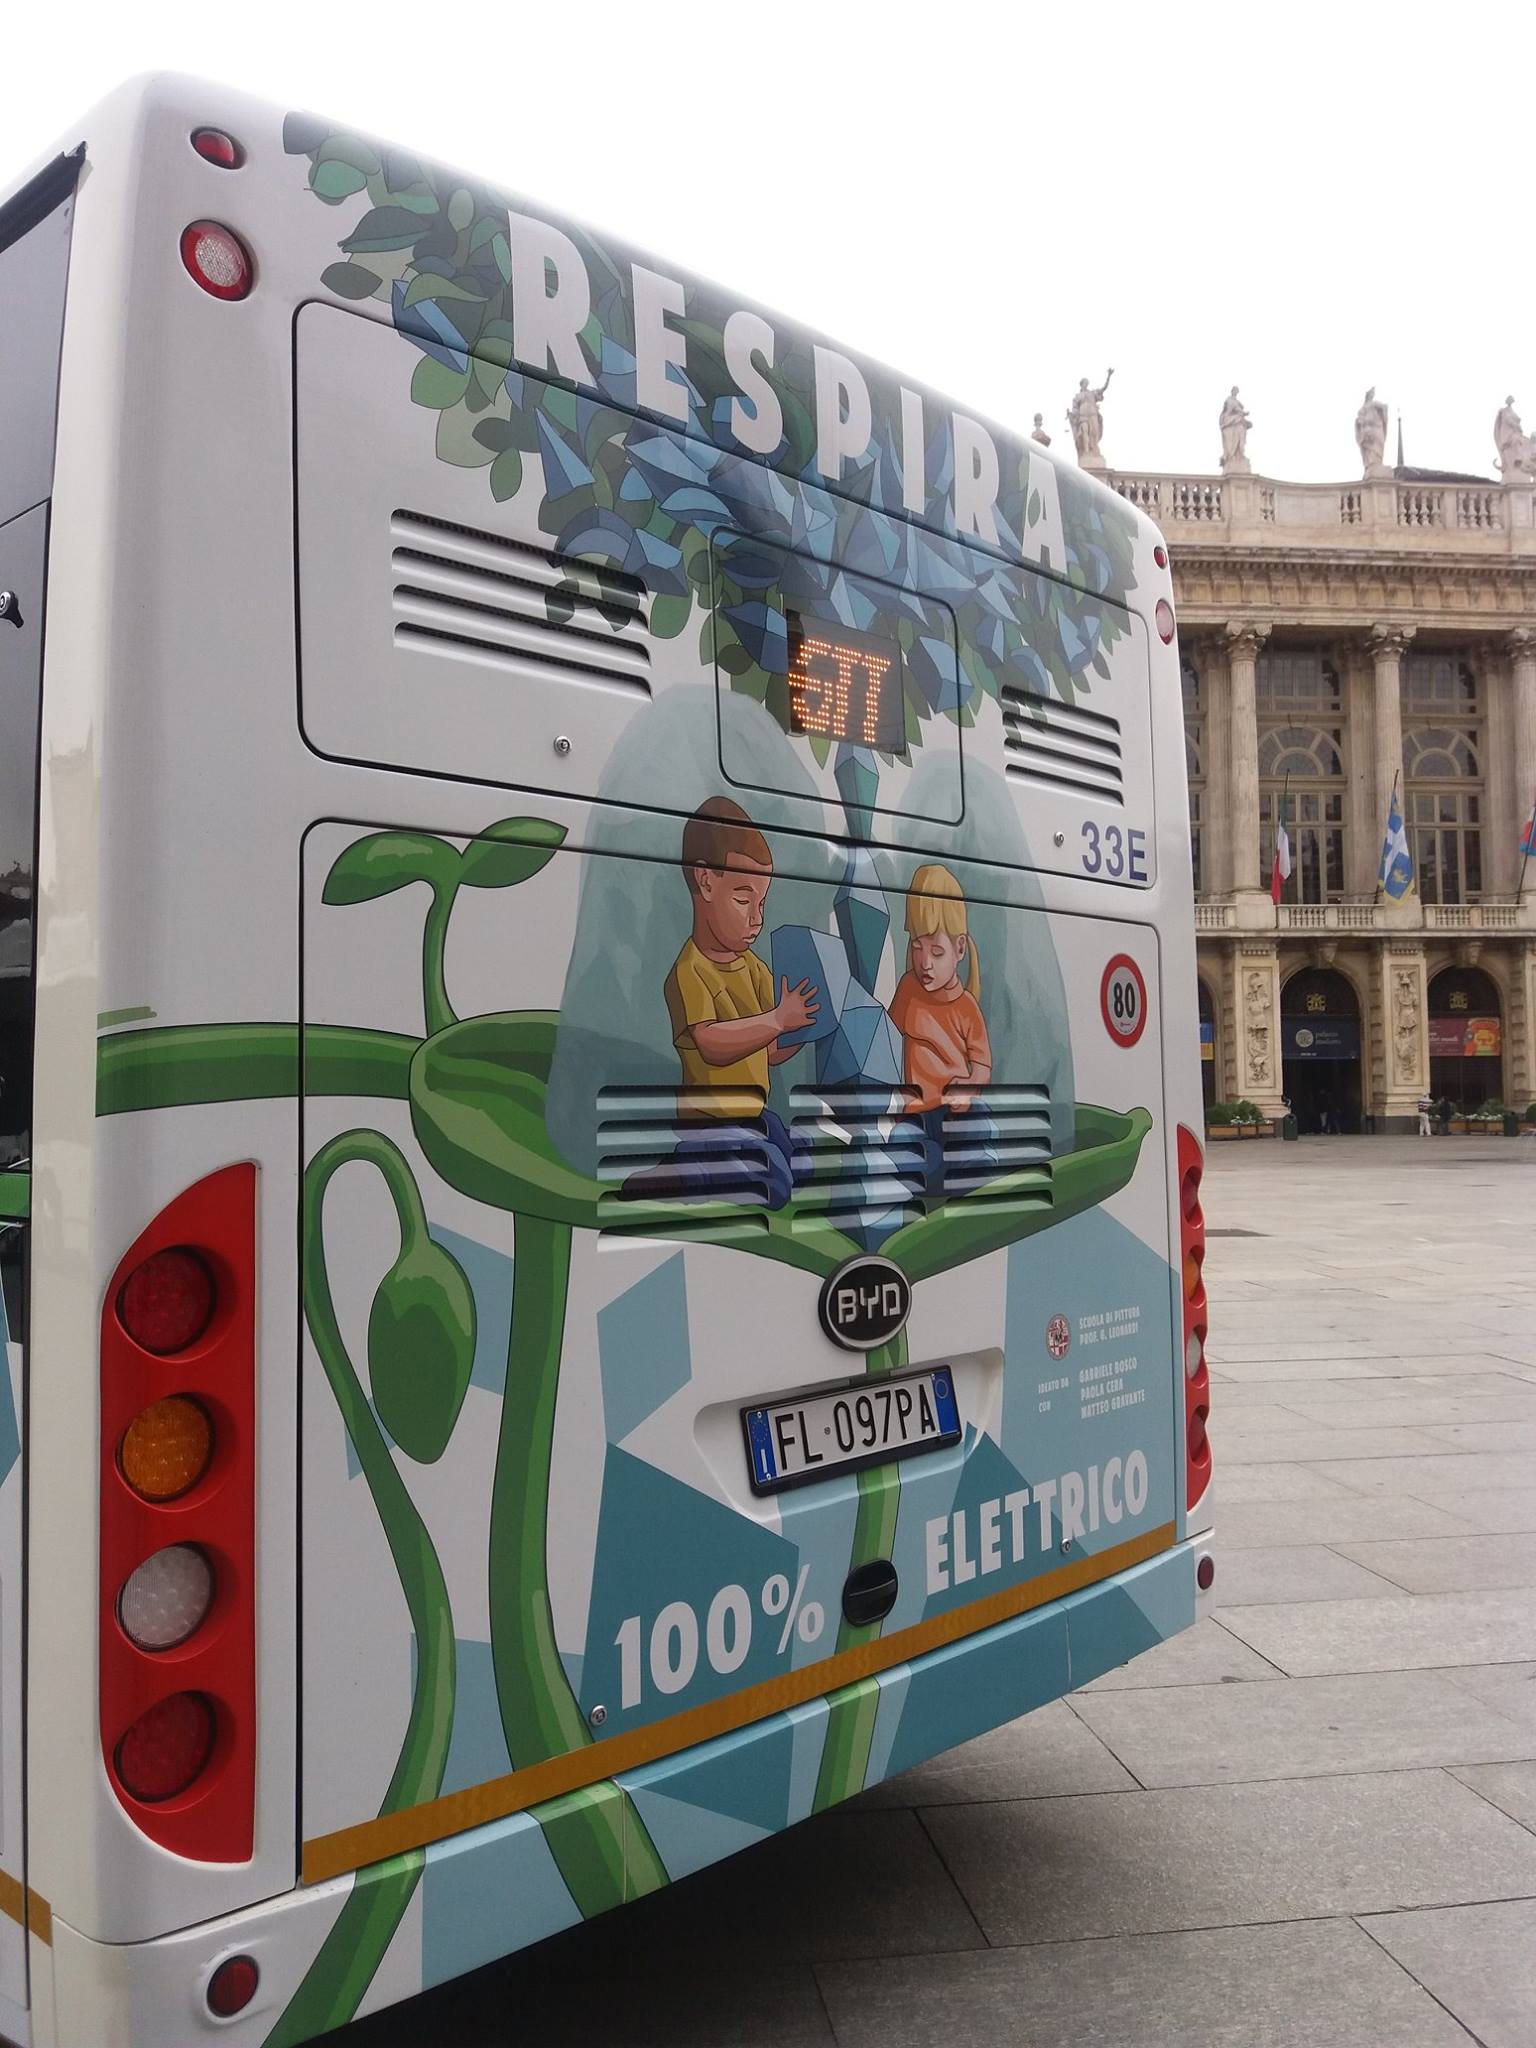 Torino, al via la riforma del trasporto pubblico: dal 1°luglio nuove tariffe per i bus